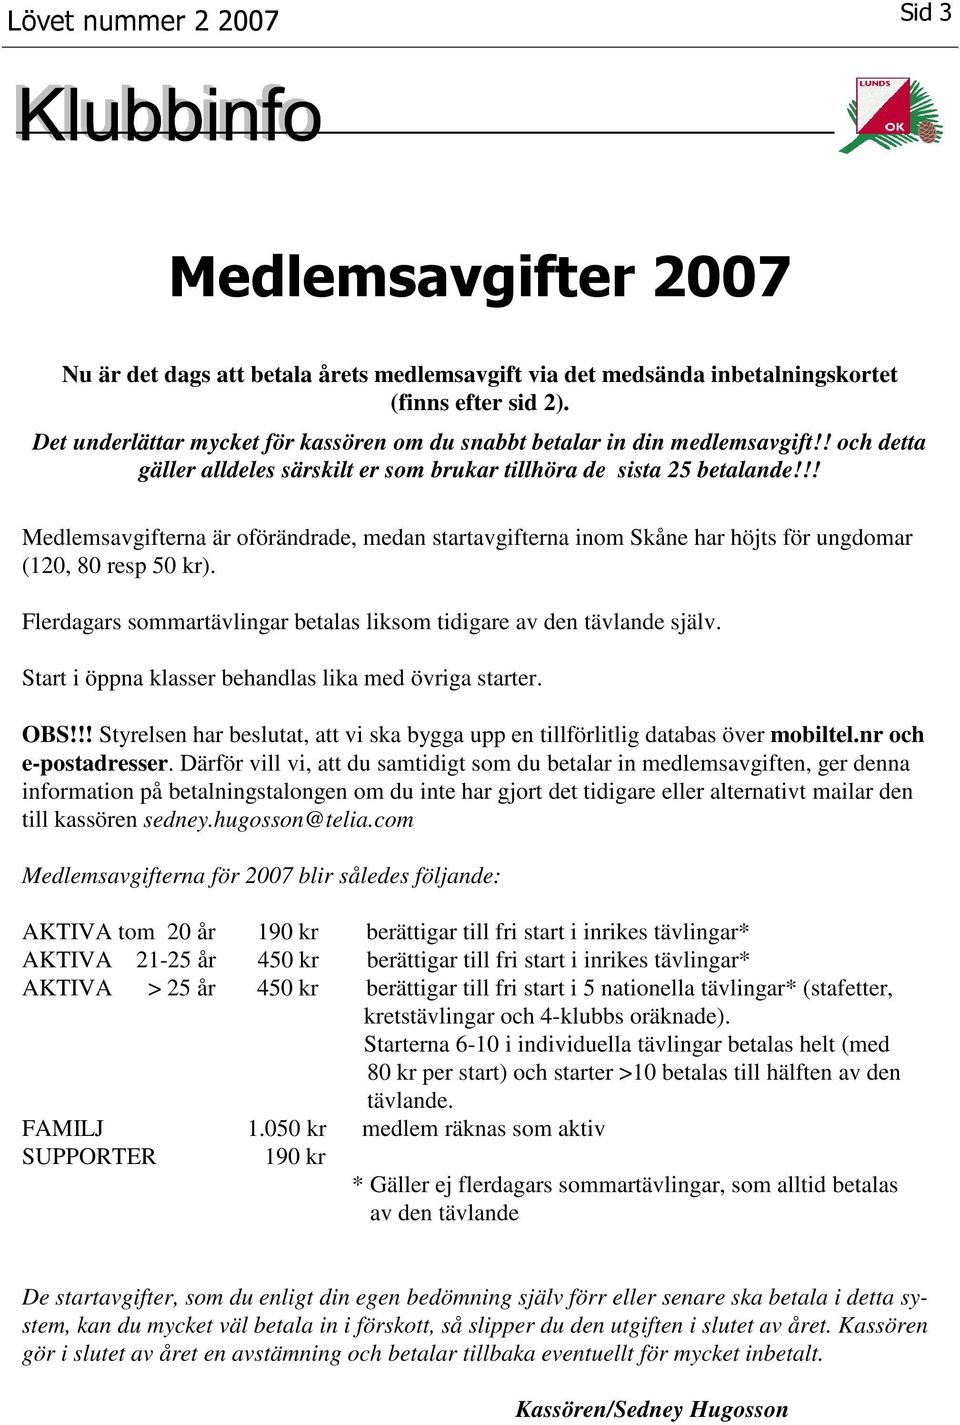 !! Medlemsavgifterna är oförändrade, medan startavgifterna inom Skåne har höjts för ungdomar (120, 80 resp 50 kr). Flerdagars sommartävlingar betalas liksom tidigare av den tävlande själv.